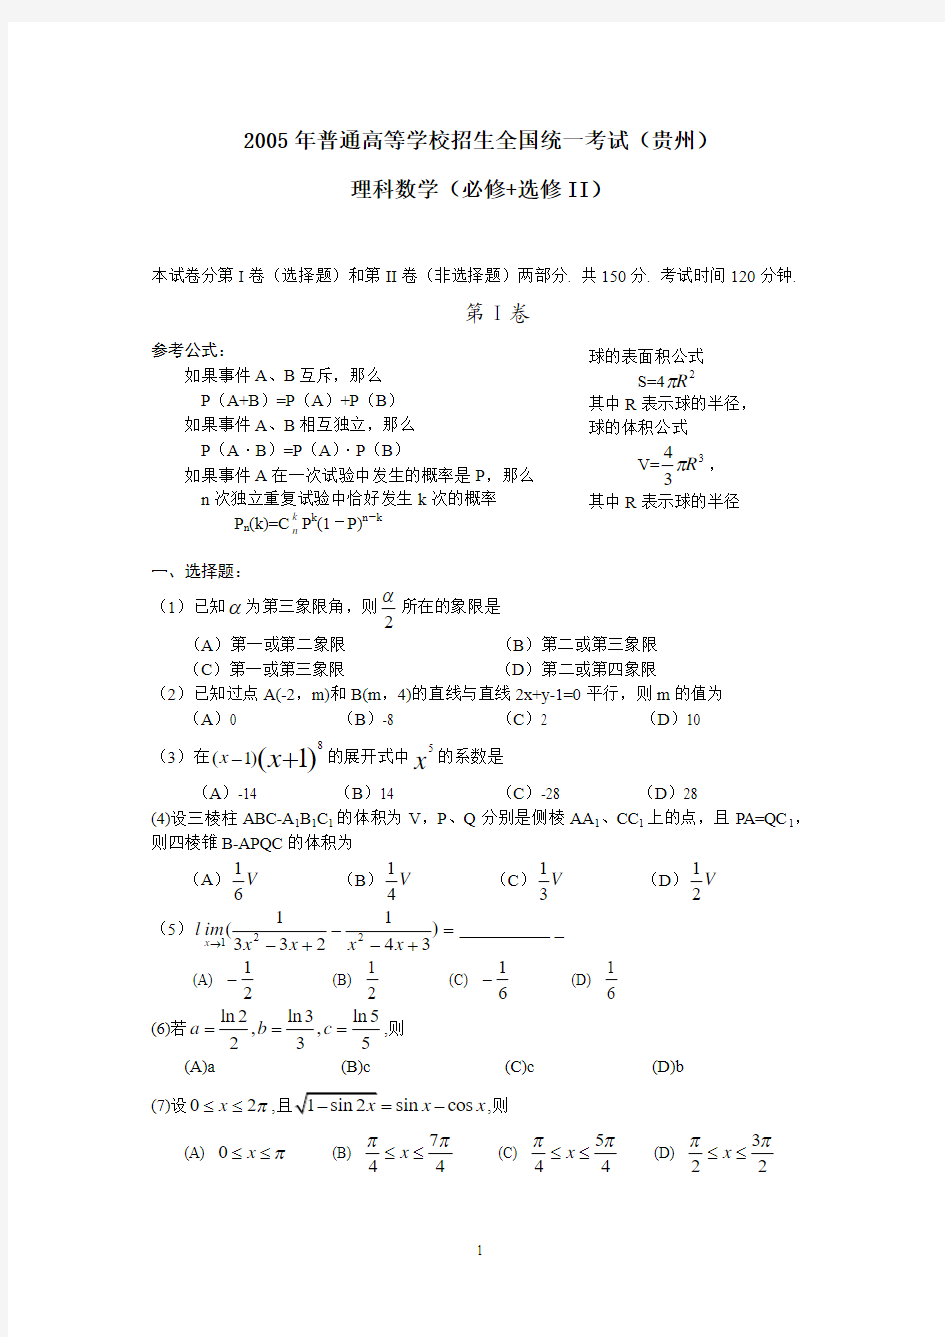 2006年陕西高考理科数学卷及解答